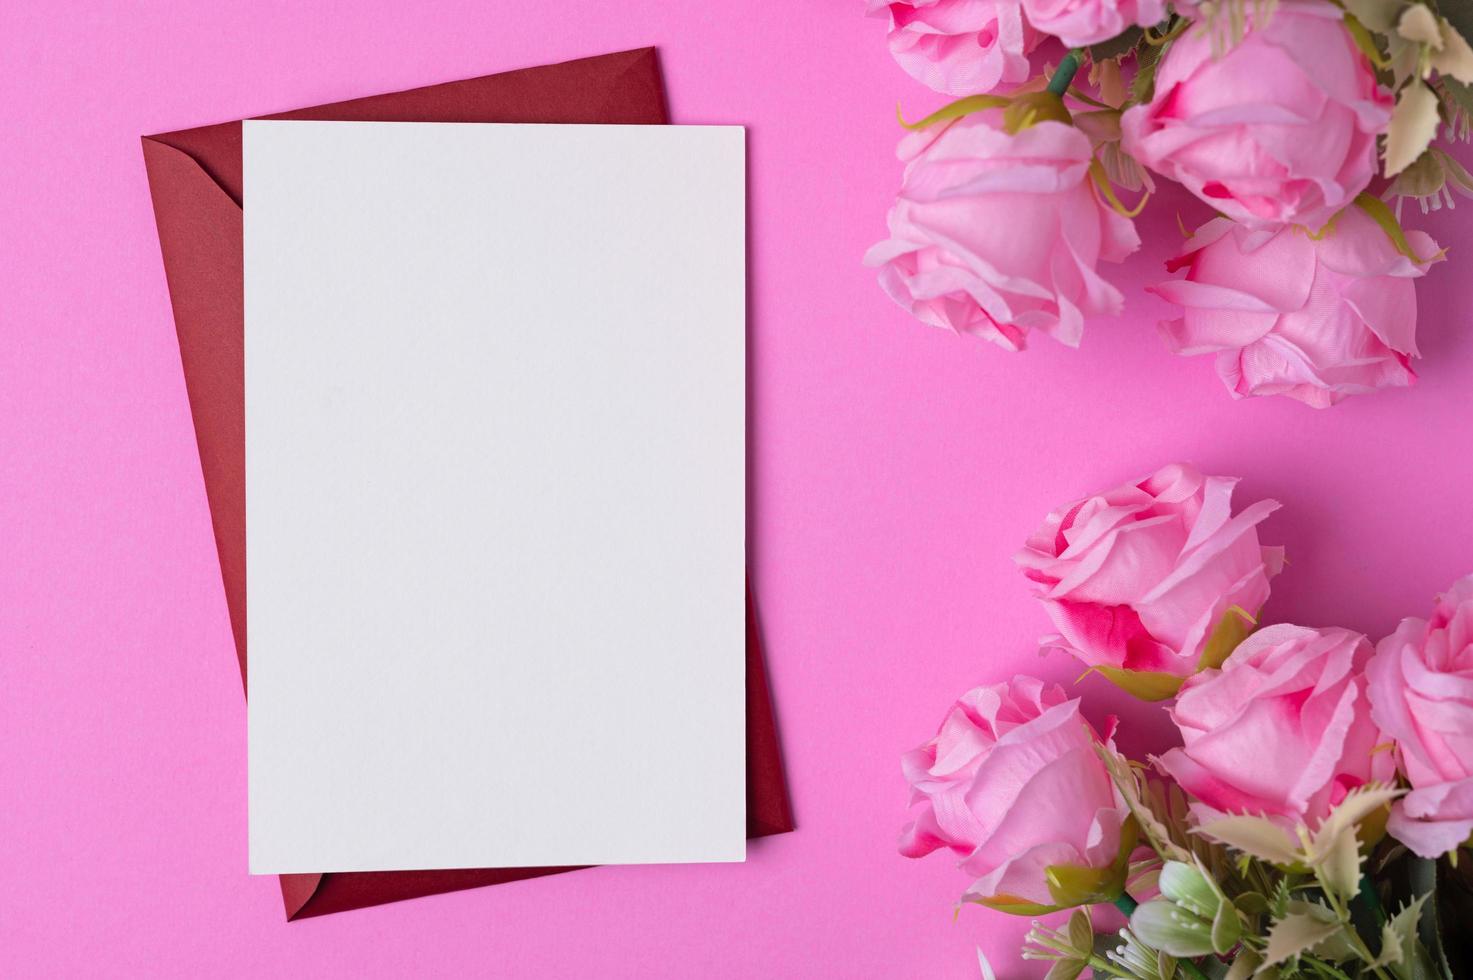 tomt papper med blommor placerade på en rosa bakgrund foto